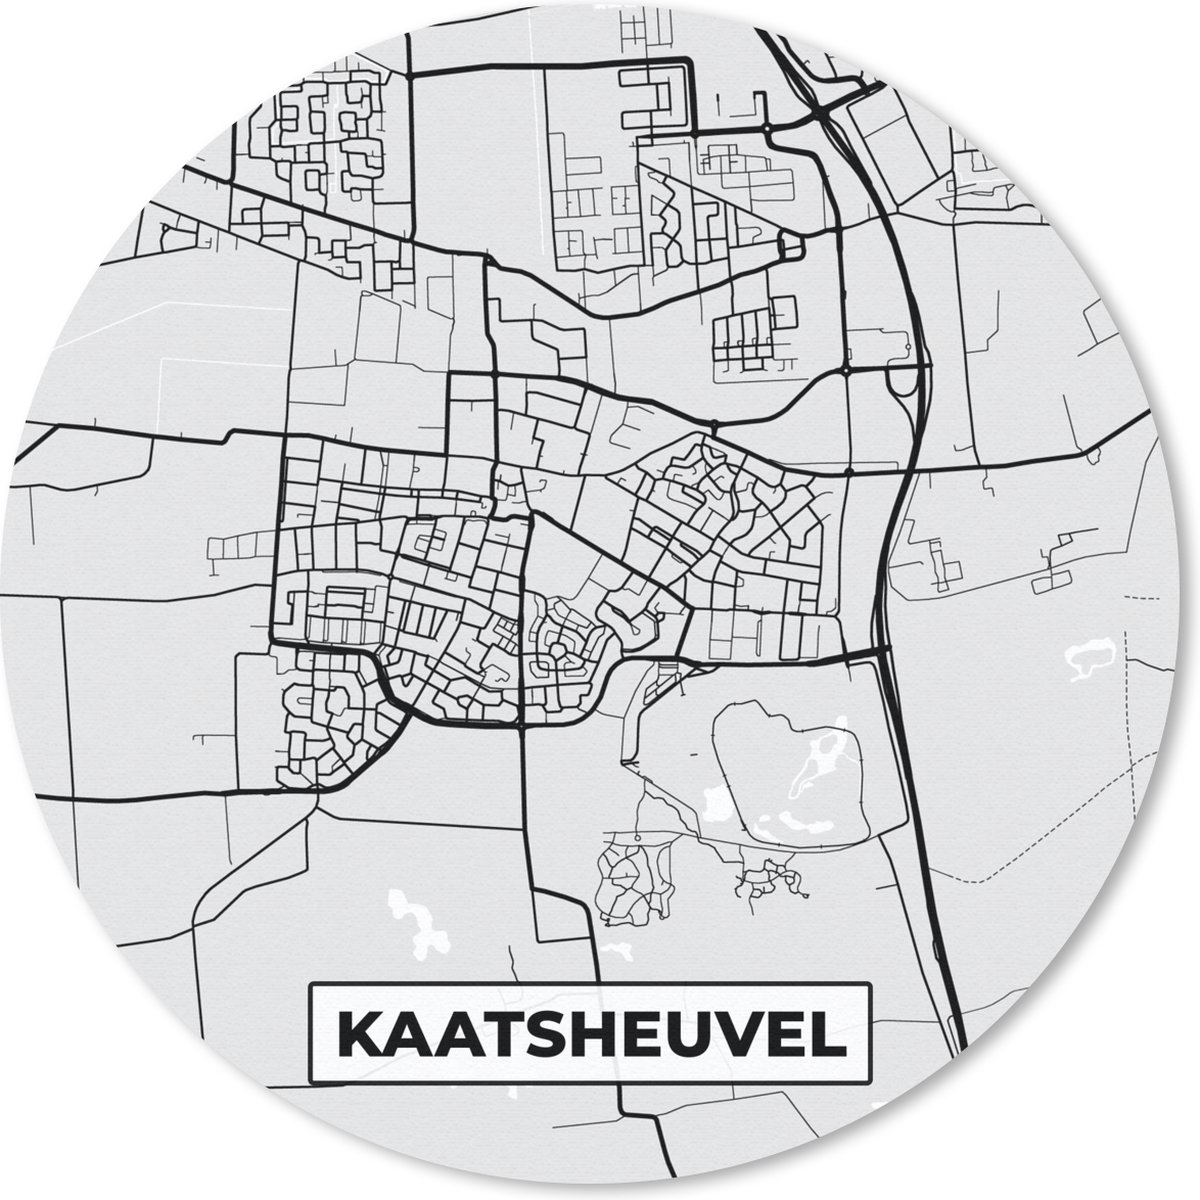 Muismat - Mousepad - Rond - Kaart - Plattegrond - Stadskaart - Kaatsheuvel - 40x40 cm - Ronde muismat